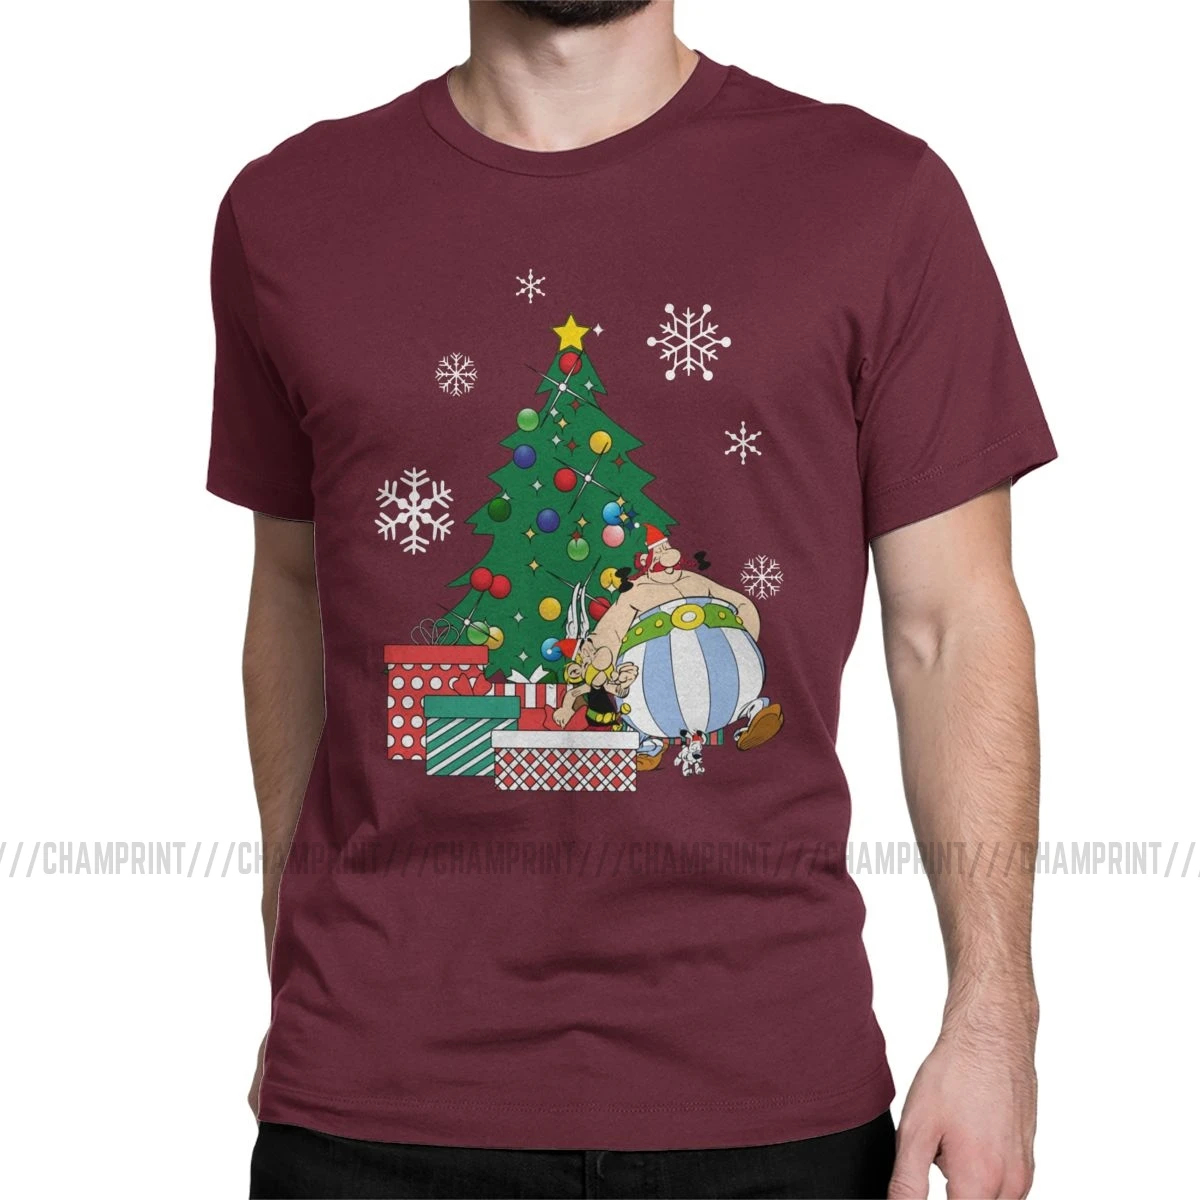 Мужская футболка Астерикс и Обеликс вокруг рождественской елки, хлопковые топы Getafix Dogmatix, футболка с коротким рукавом, подарок на день рождения, футболки - Цвет: Бургундия